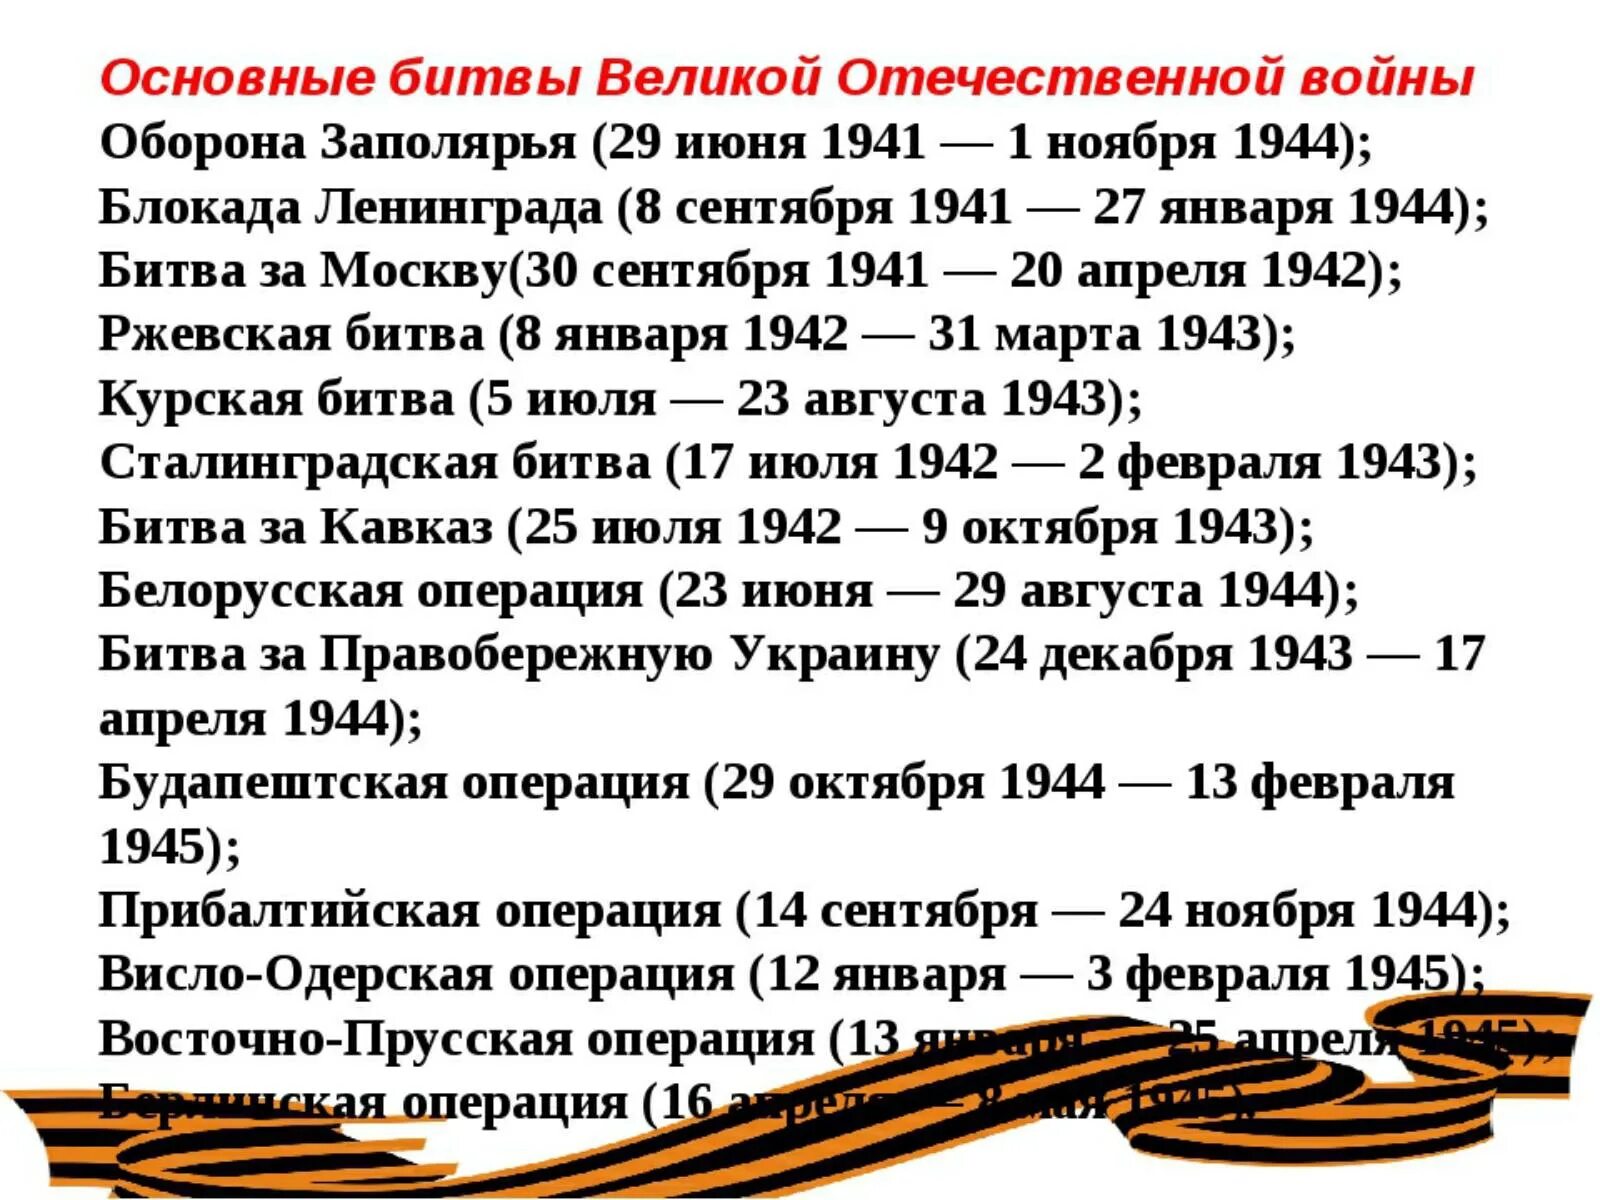 Про вов кратко. Важнейшие битвы ВОВ даты. Даты крупных сражений Великой Отечественной войны. Даты Великой Отечественной войны основные 1945.